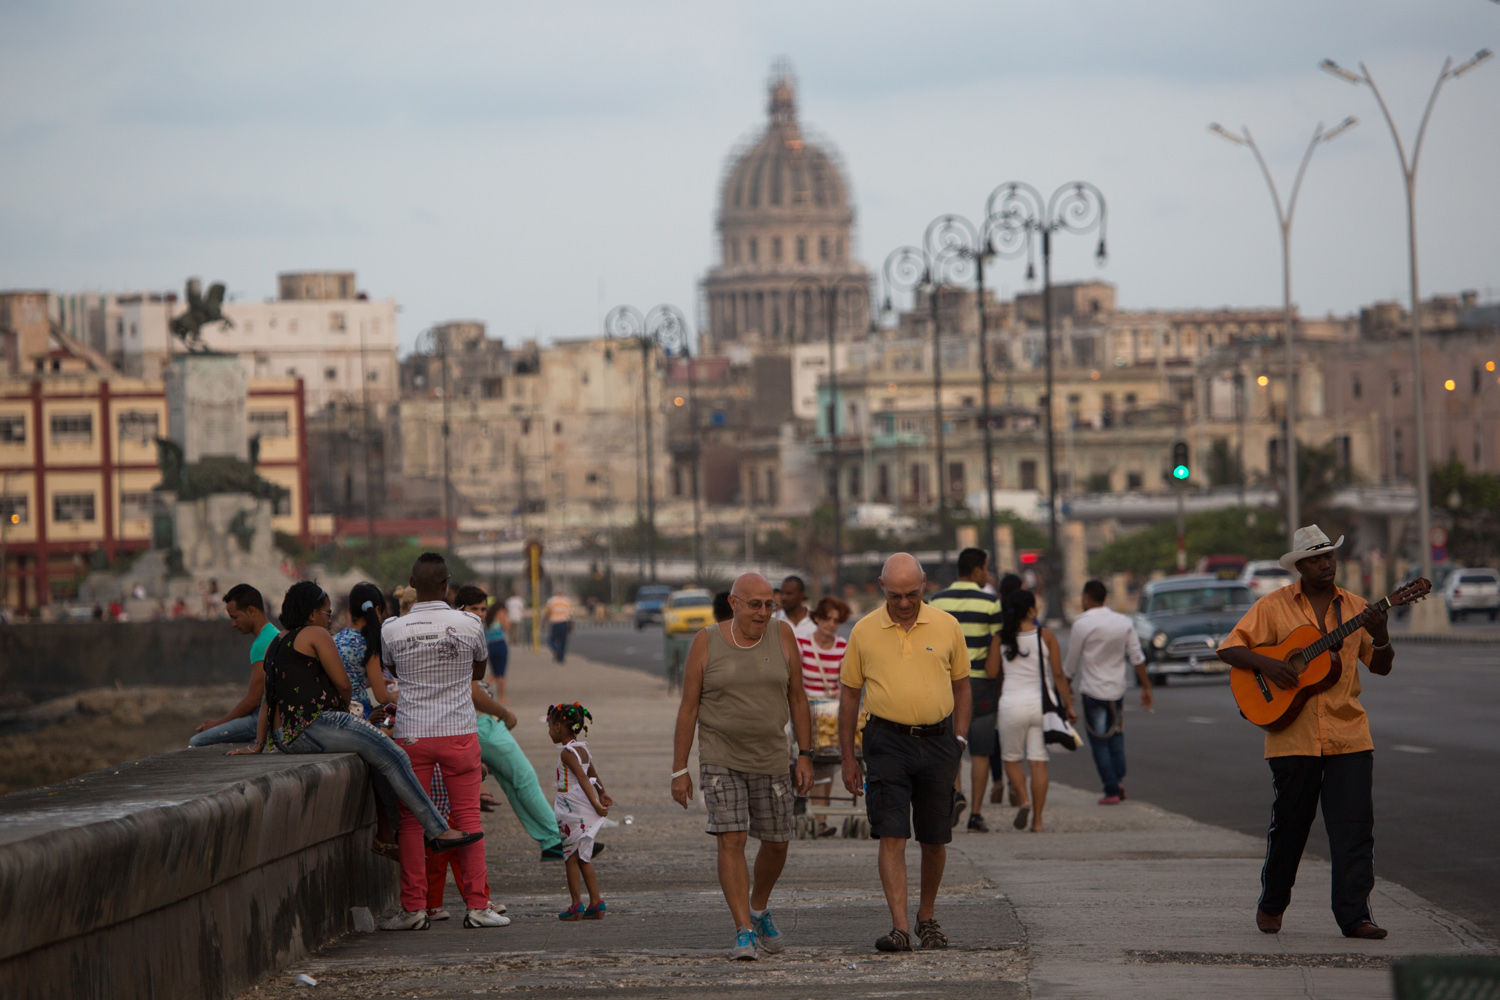 De paseo por el malecón de La Habana, Cuba